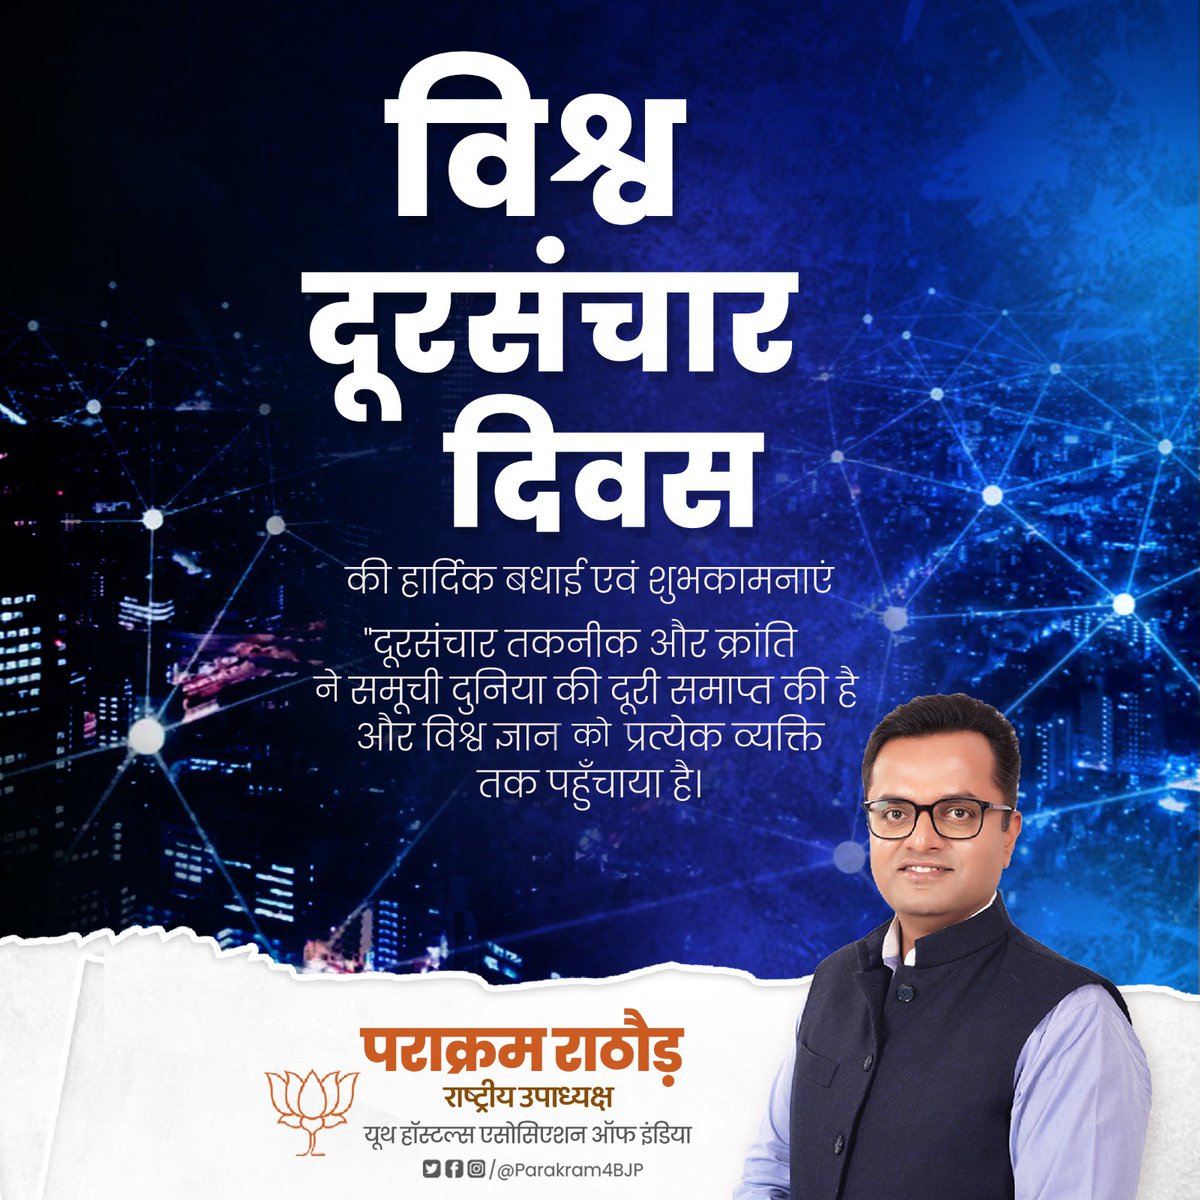 इंटरनेट और नवीन प्रौद्योगिकी के माध्यम से भारतीय दूरसंचार आज दुनिया में नये आयाम स्थापित कर रहा है। सभी को 'विश्व दूरसंचार दिवस' की हार्दिक शुभकामनाएं। #WorldTelecommunicationDay